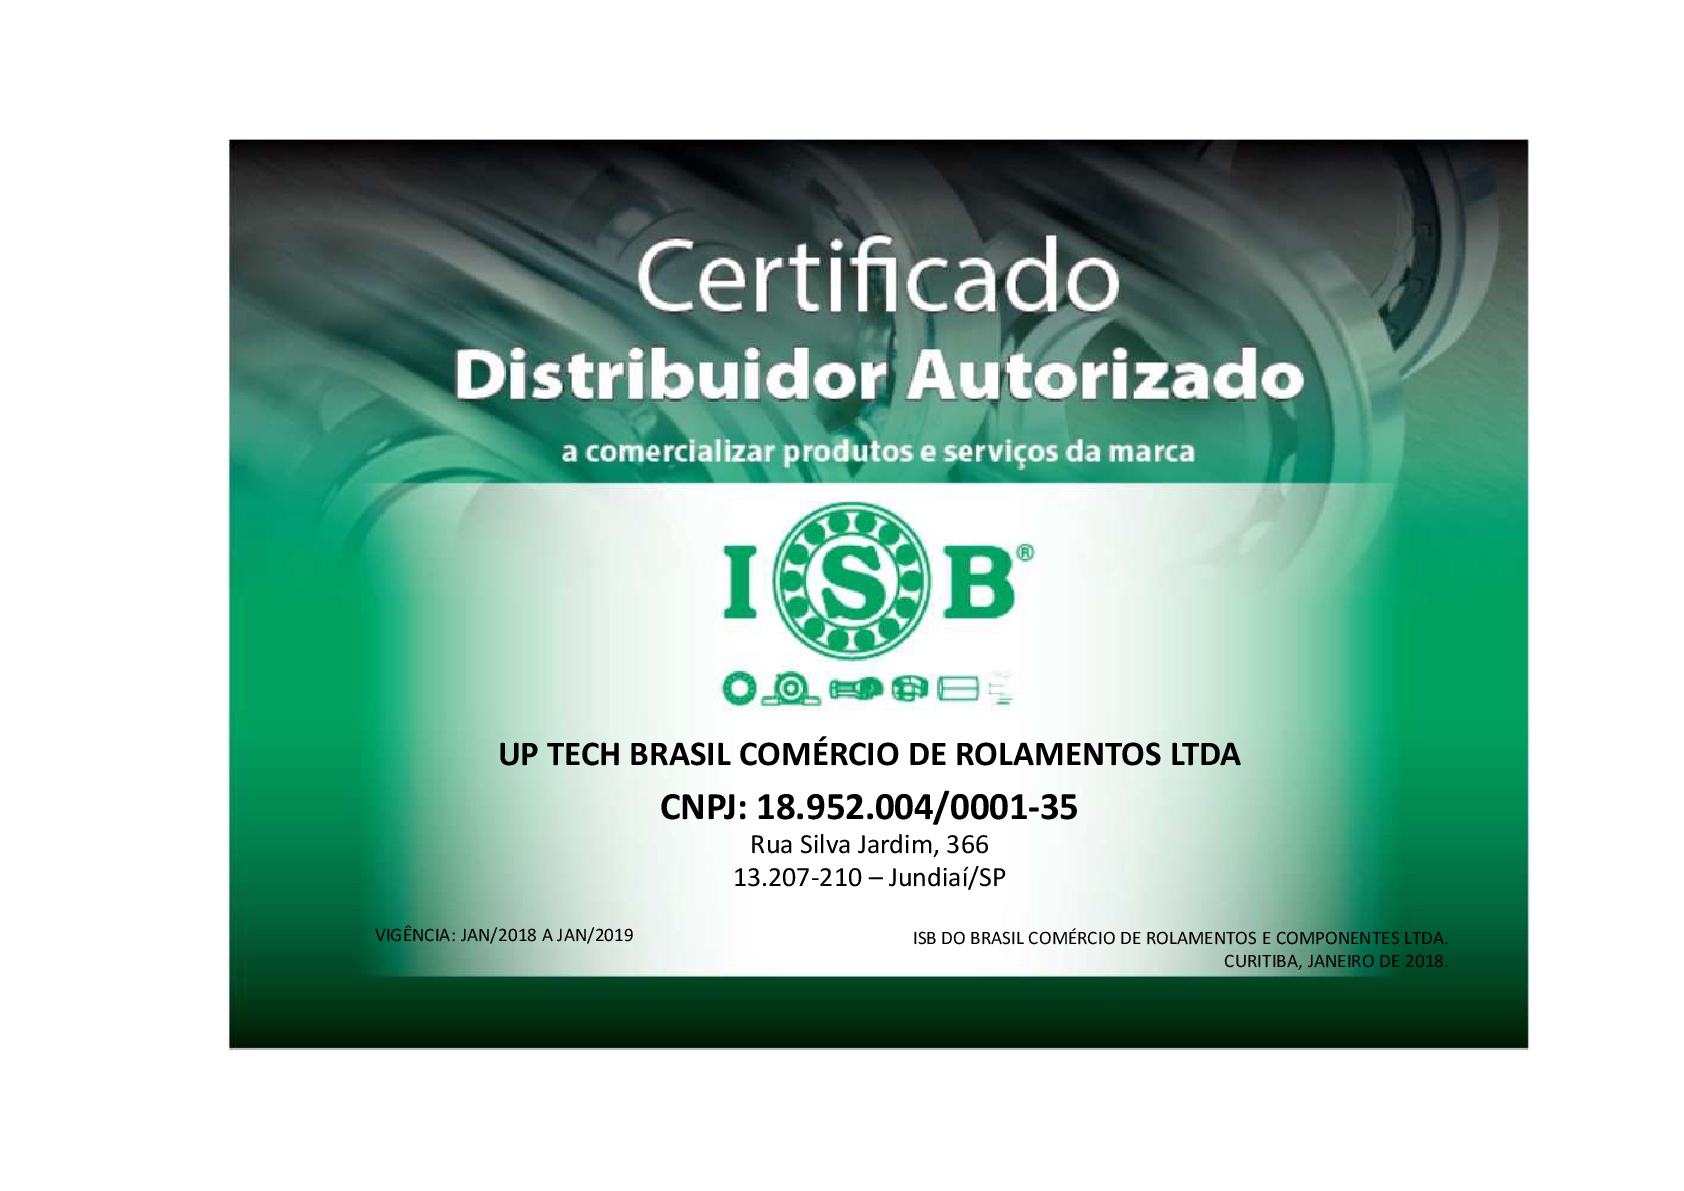 Distribuidor Autorizado - ISB